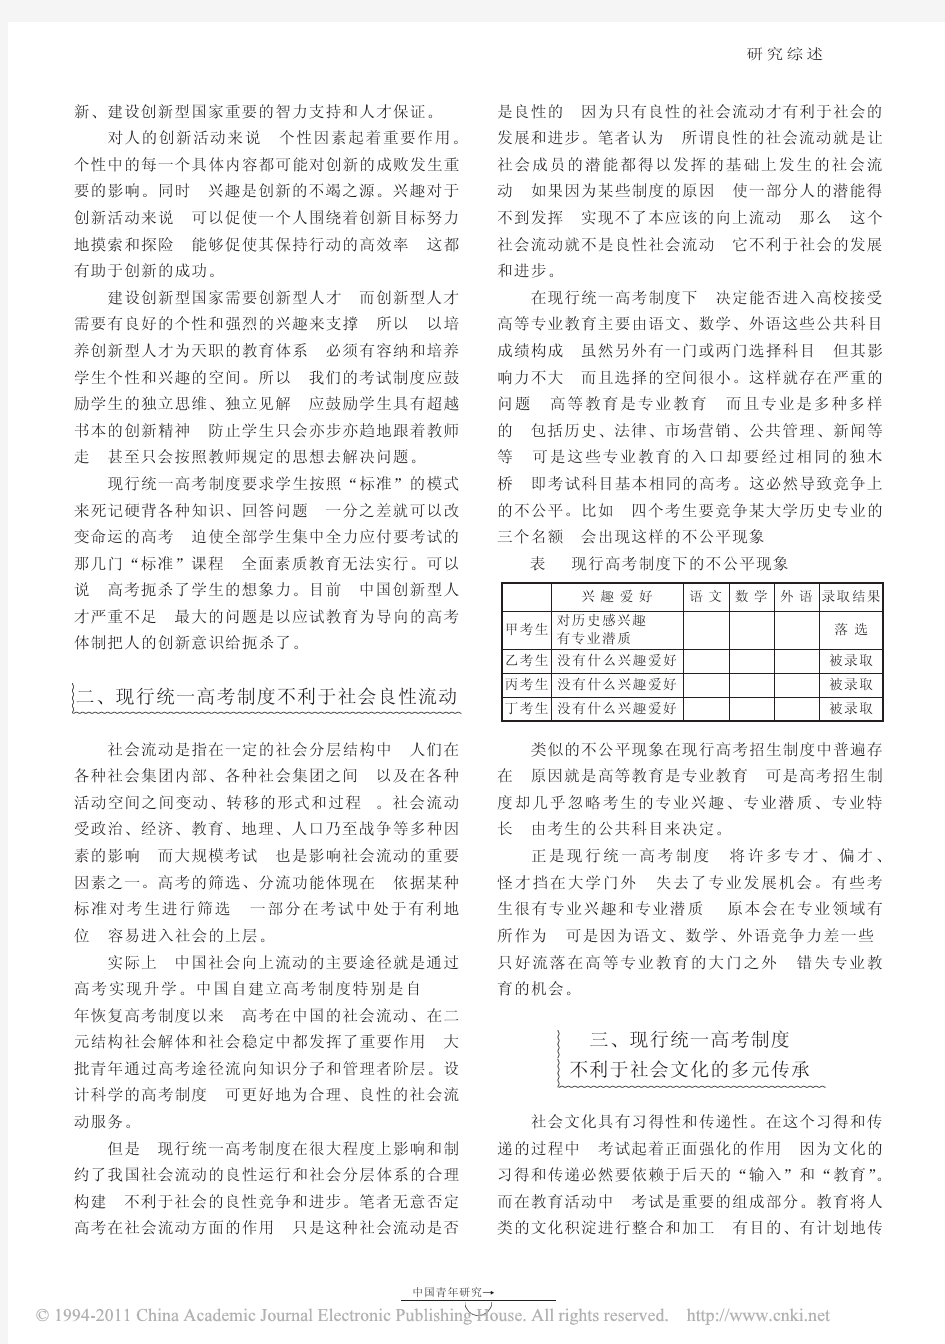 中国高考制度改革的社会学分析